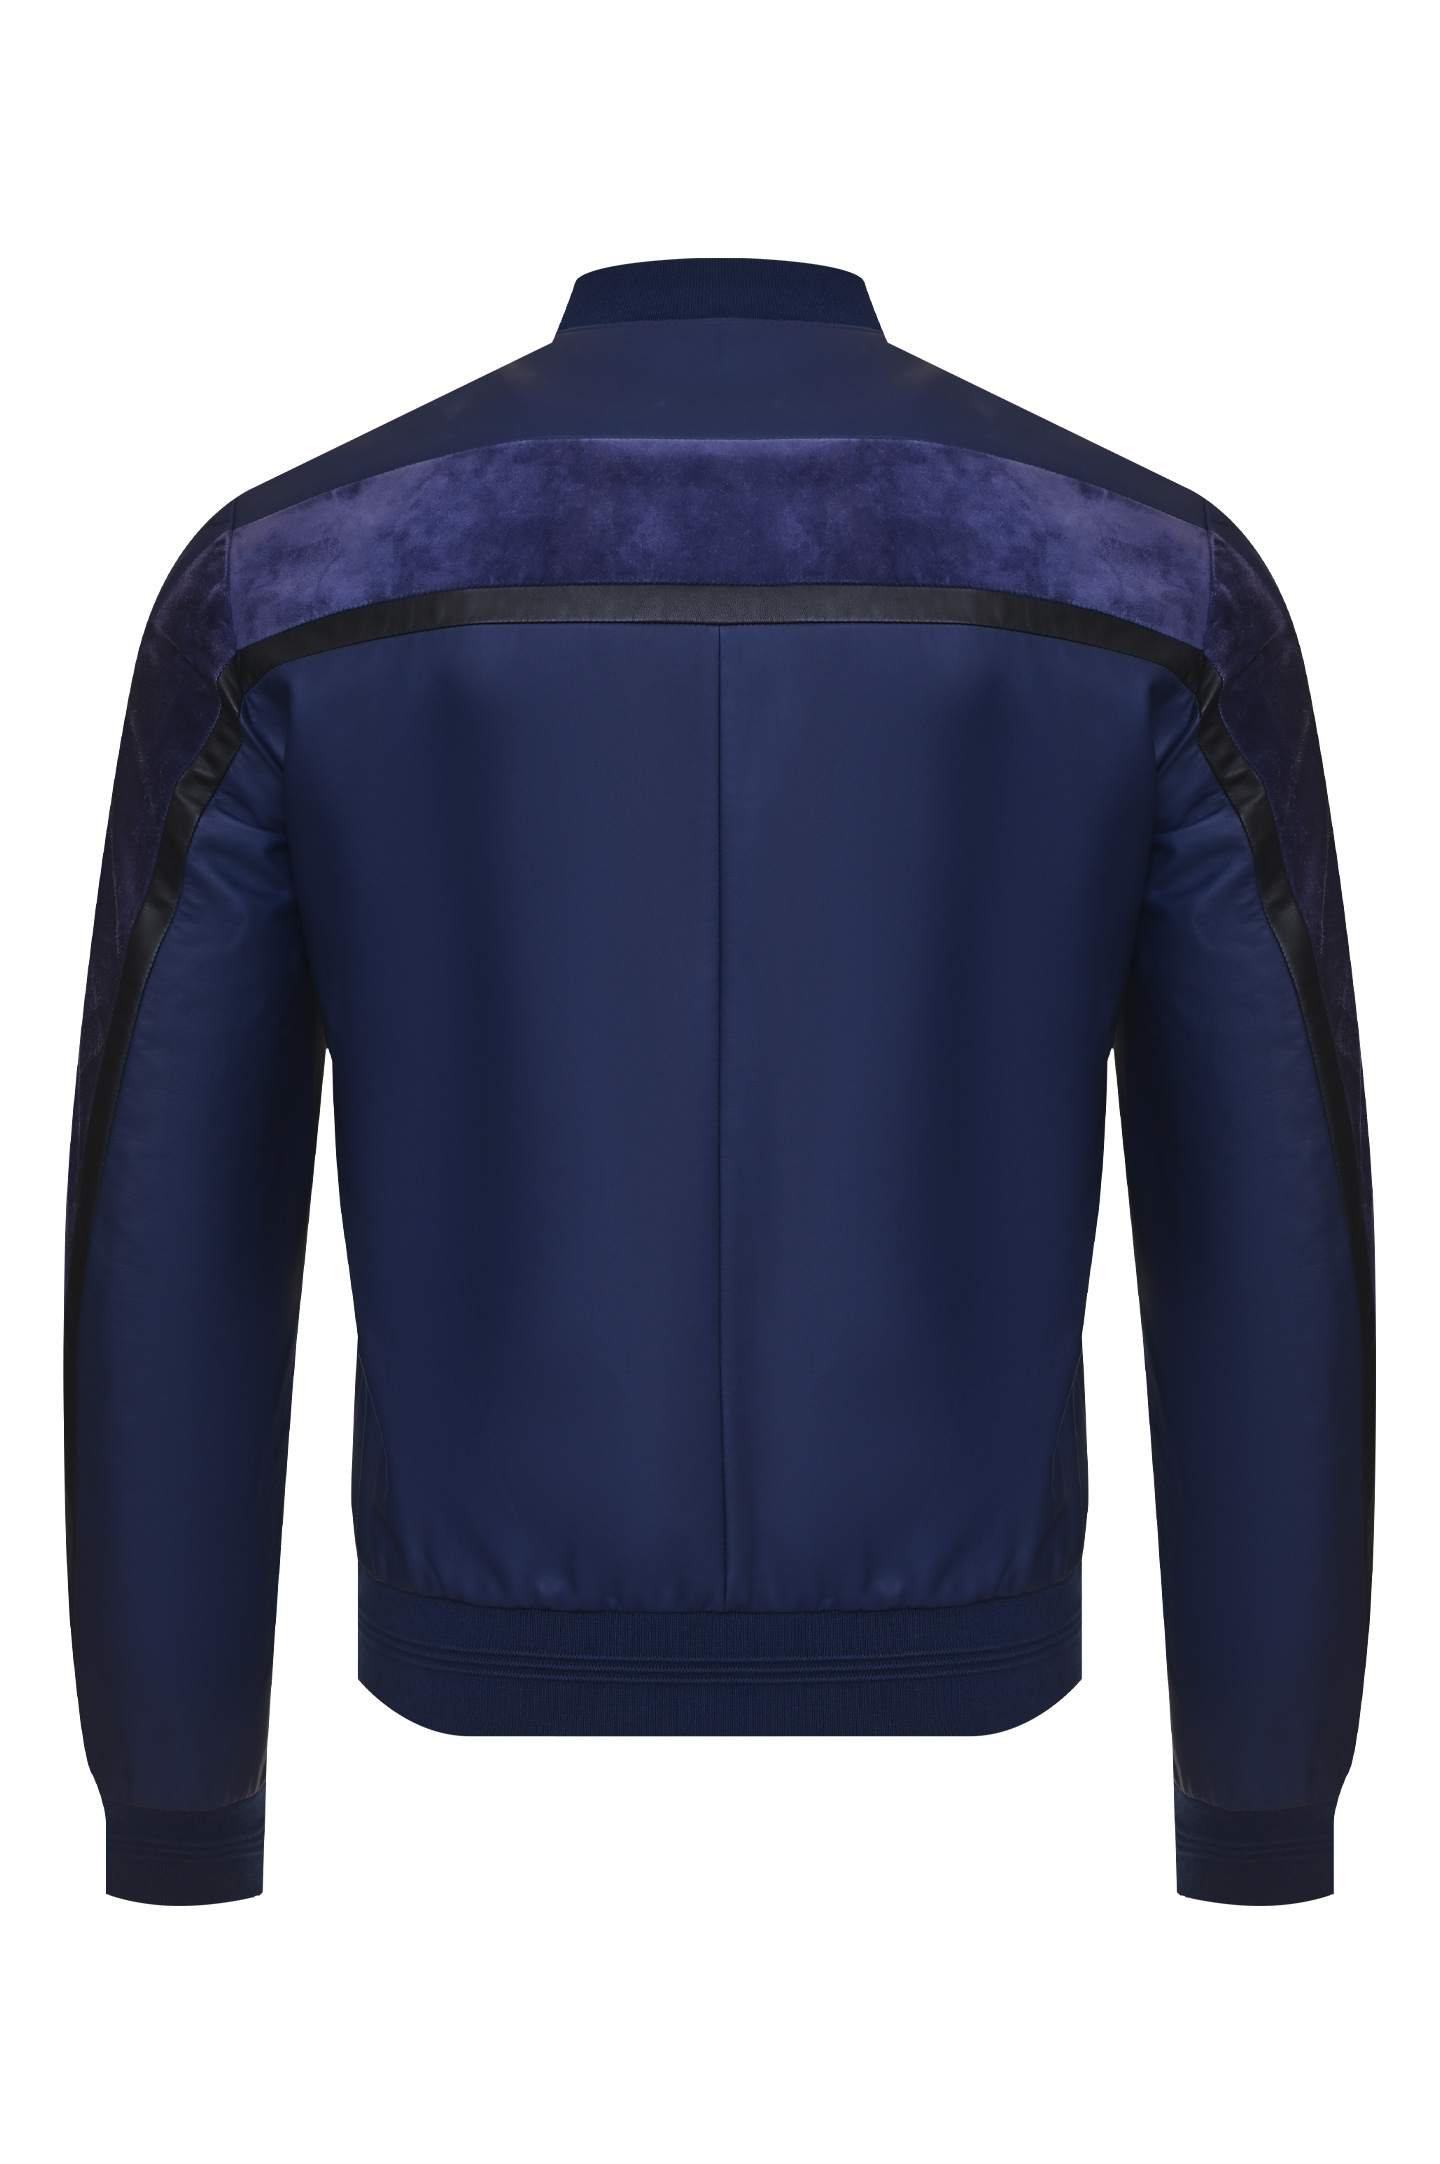 Куртка STEFANO RICCI MZJ8100040 B0233 B036, цвет: Синий, Мужской